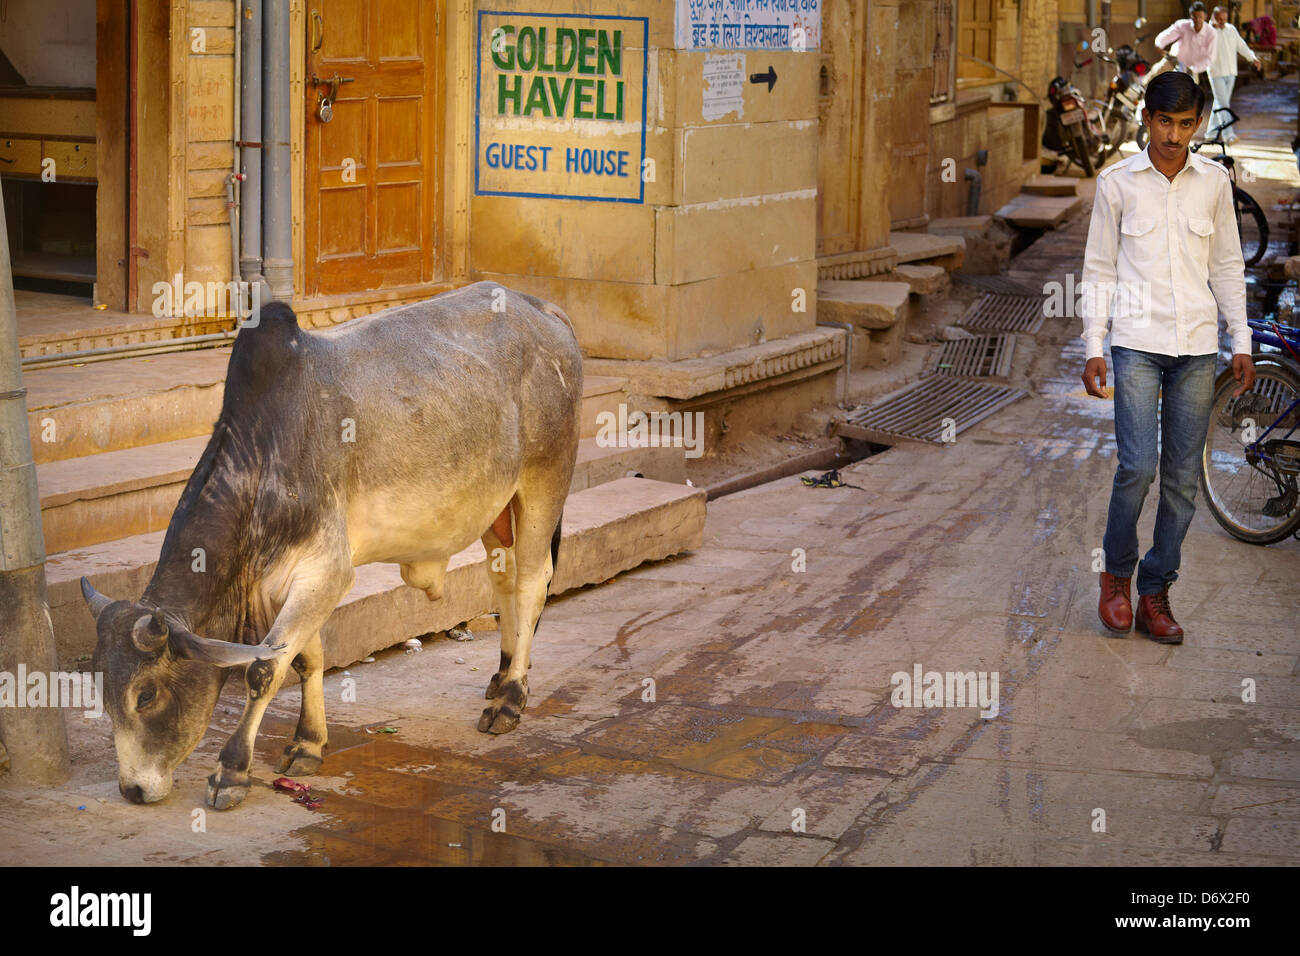 Escena callejera con vaca y la India man walking, Jaisalmer, Estado de Rajasthan, India Foto de stock